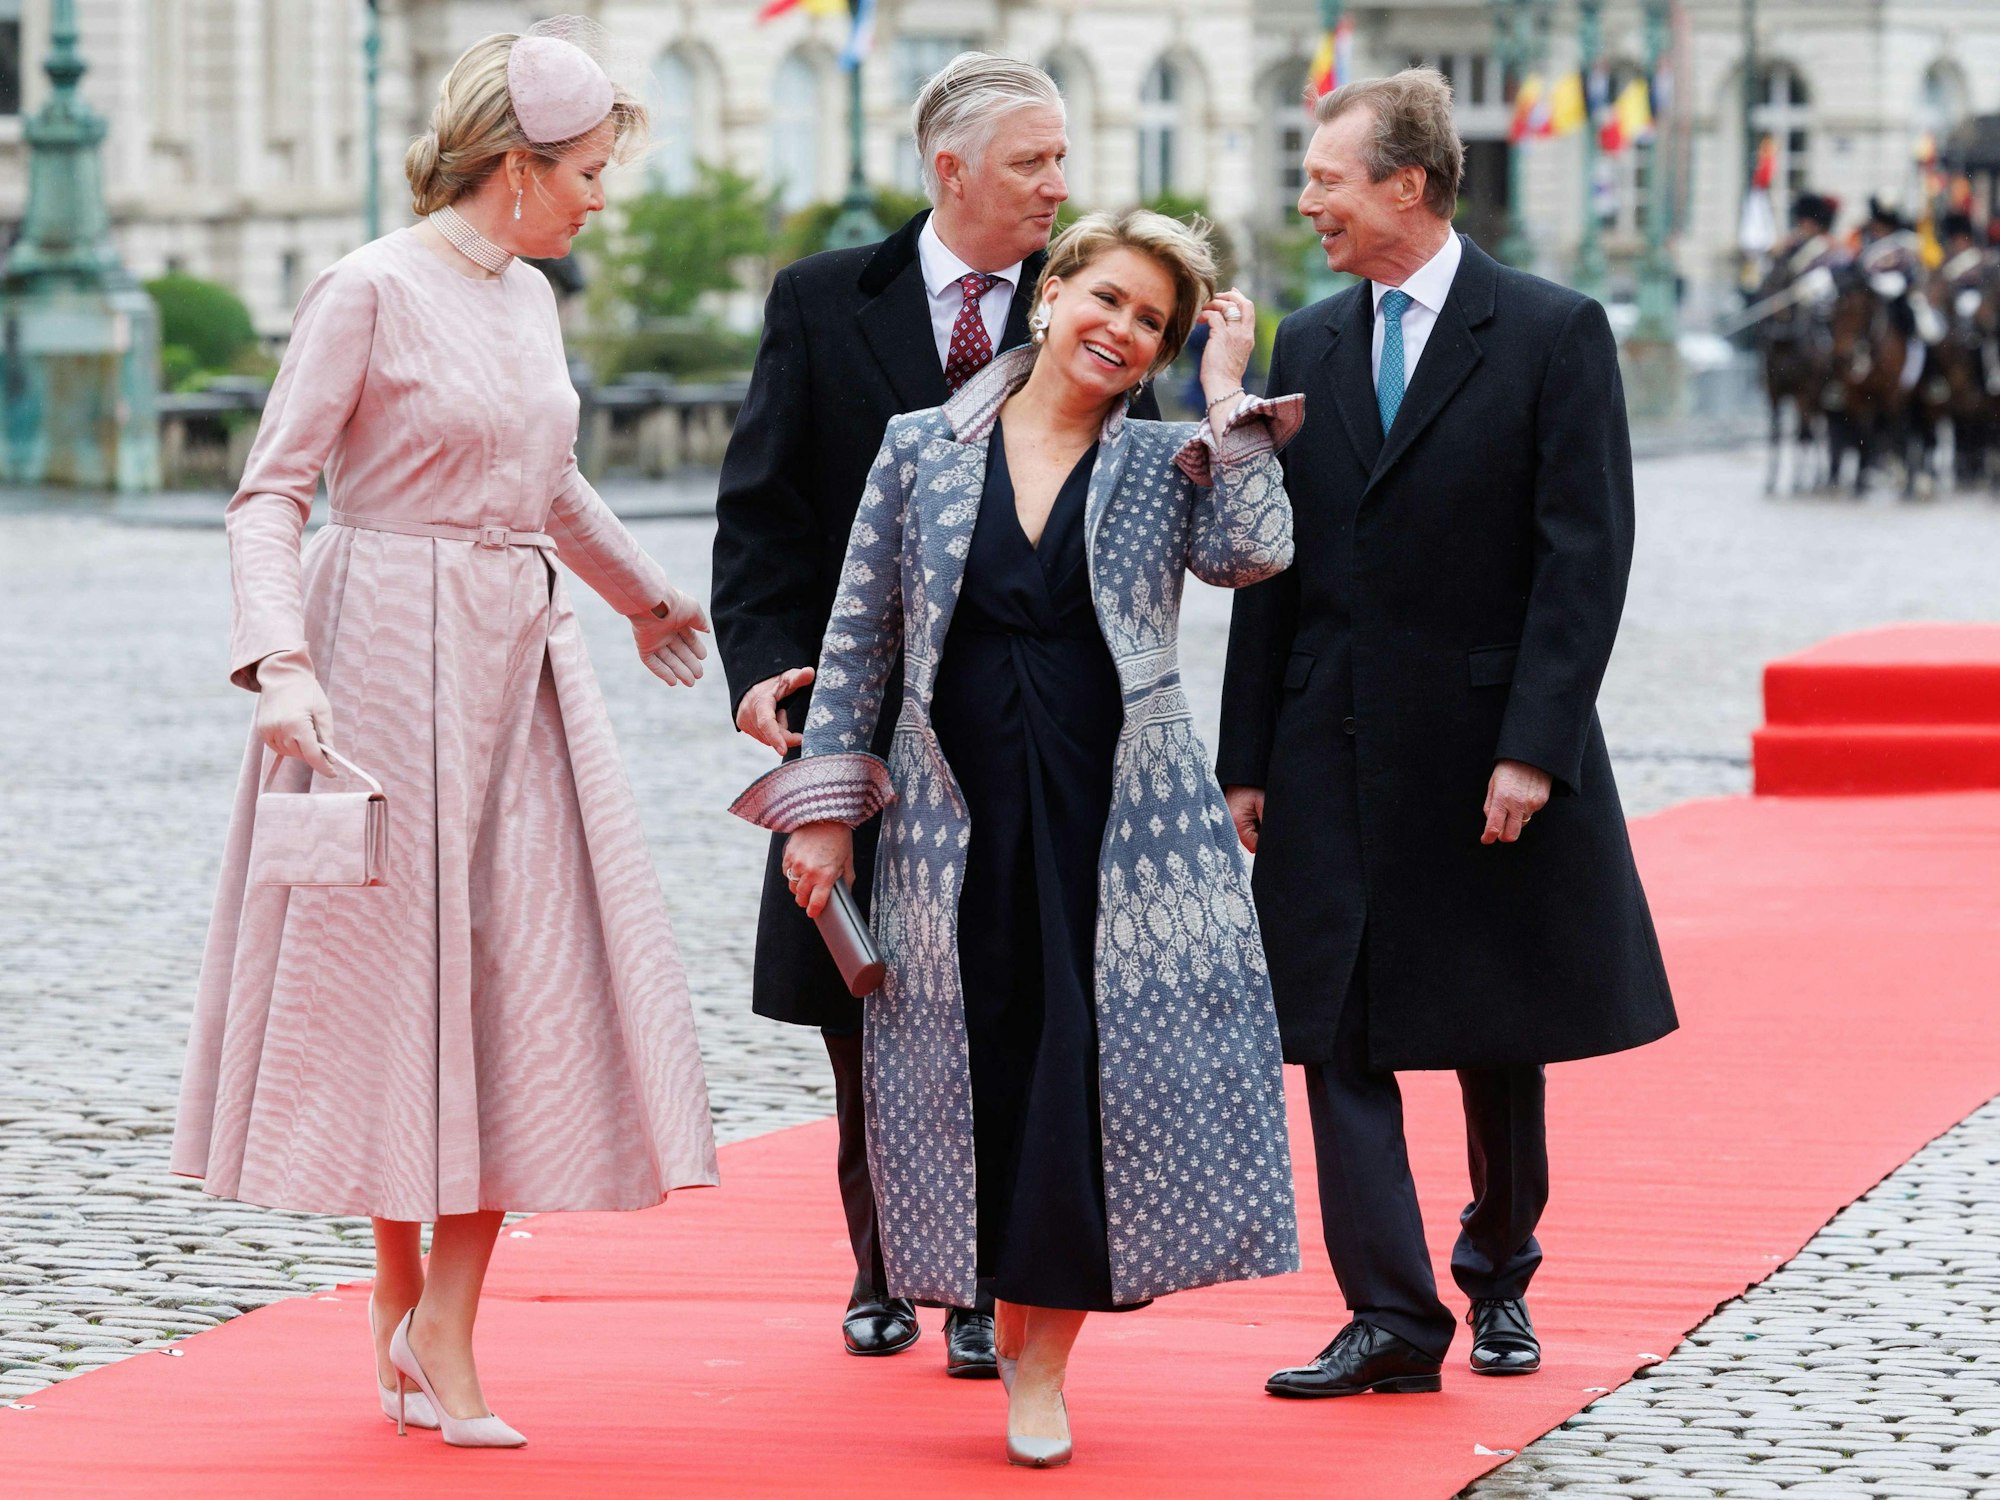 Königin Mathilde von Belgien, König Philippe-Filip von Belgien, Großherzogin Maria Teresa von Luxemburg und Großherzog Henri von Luxemburg während der offiziellen Begrüßungszeremonie im Königlichen Palast am ersten Tag des offiziellen Staatsbesuchs des luxemburgischen Königspaares in Belgien.